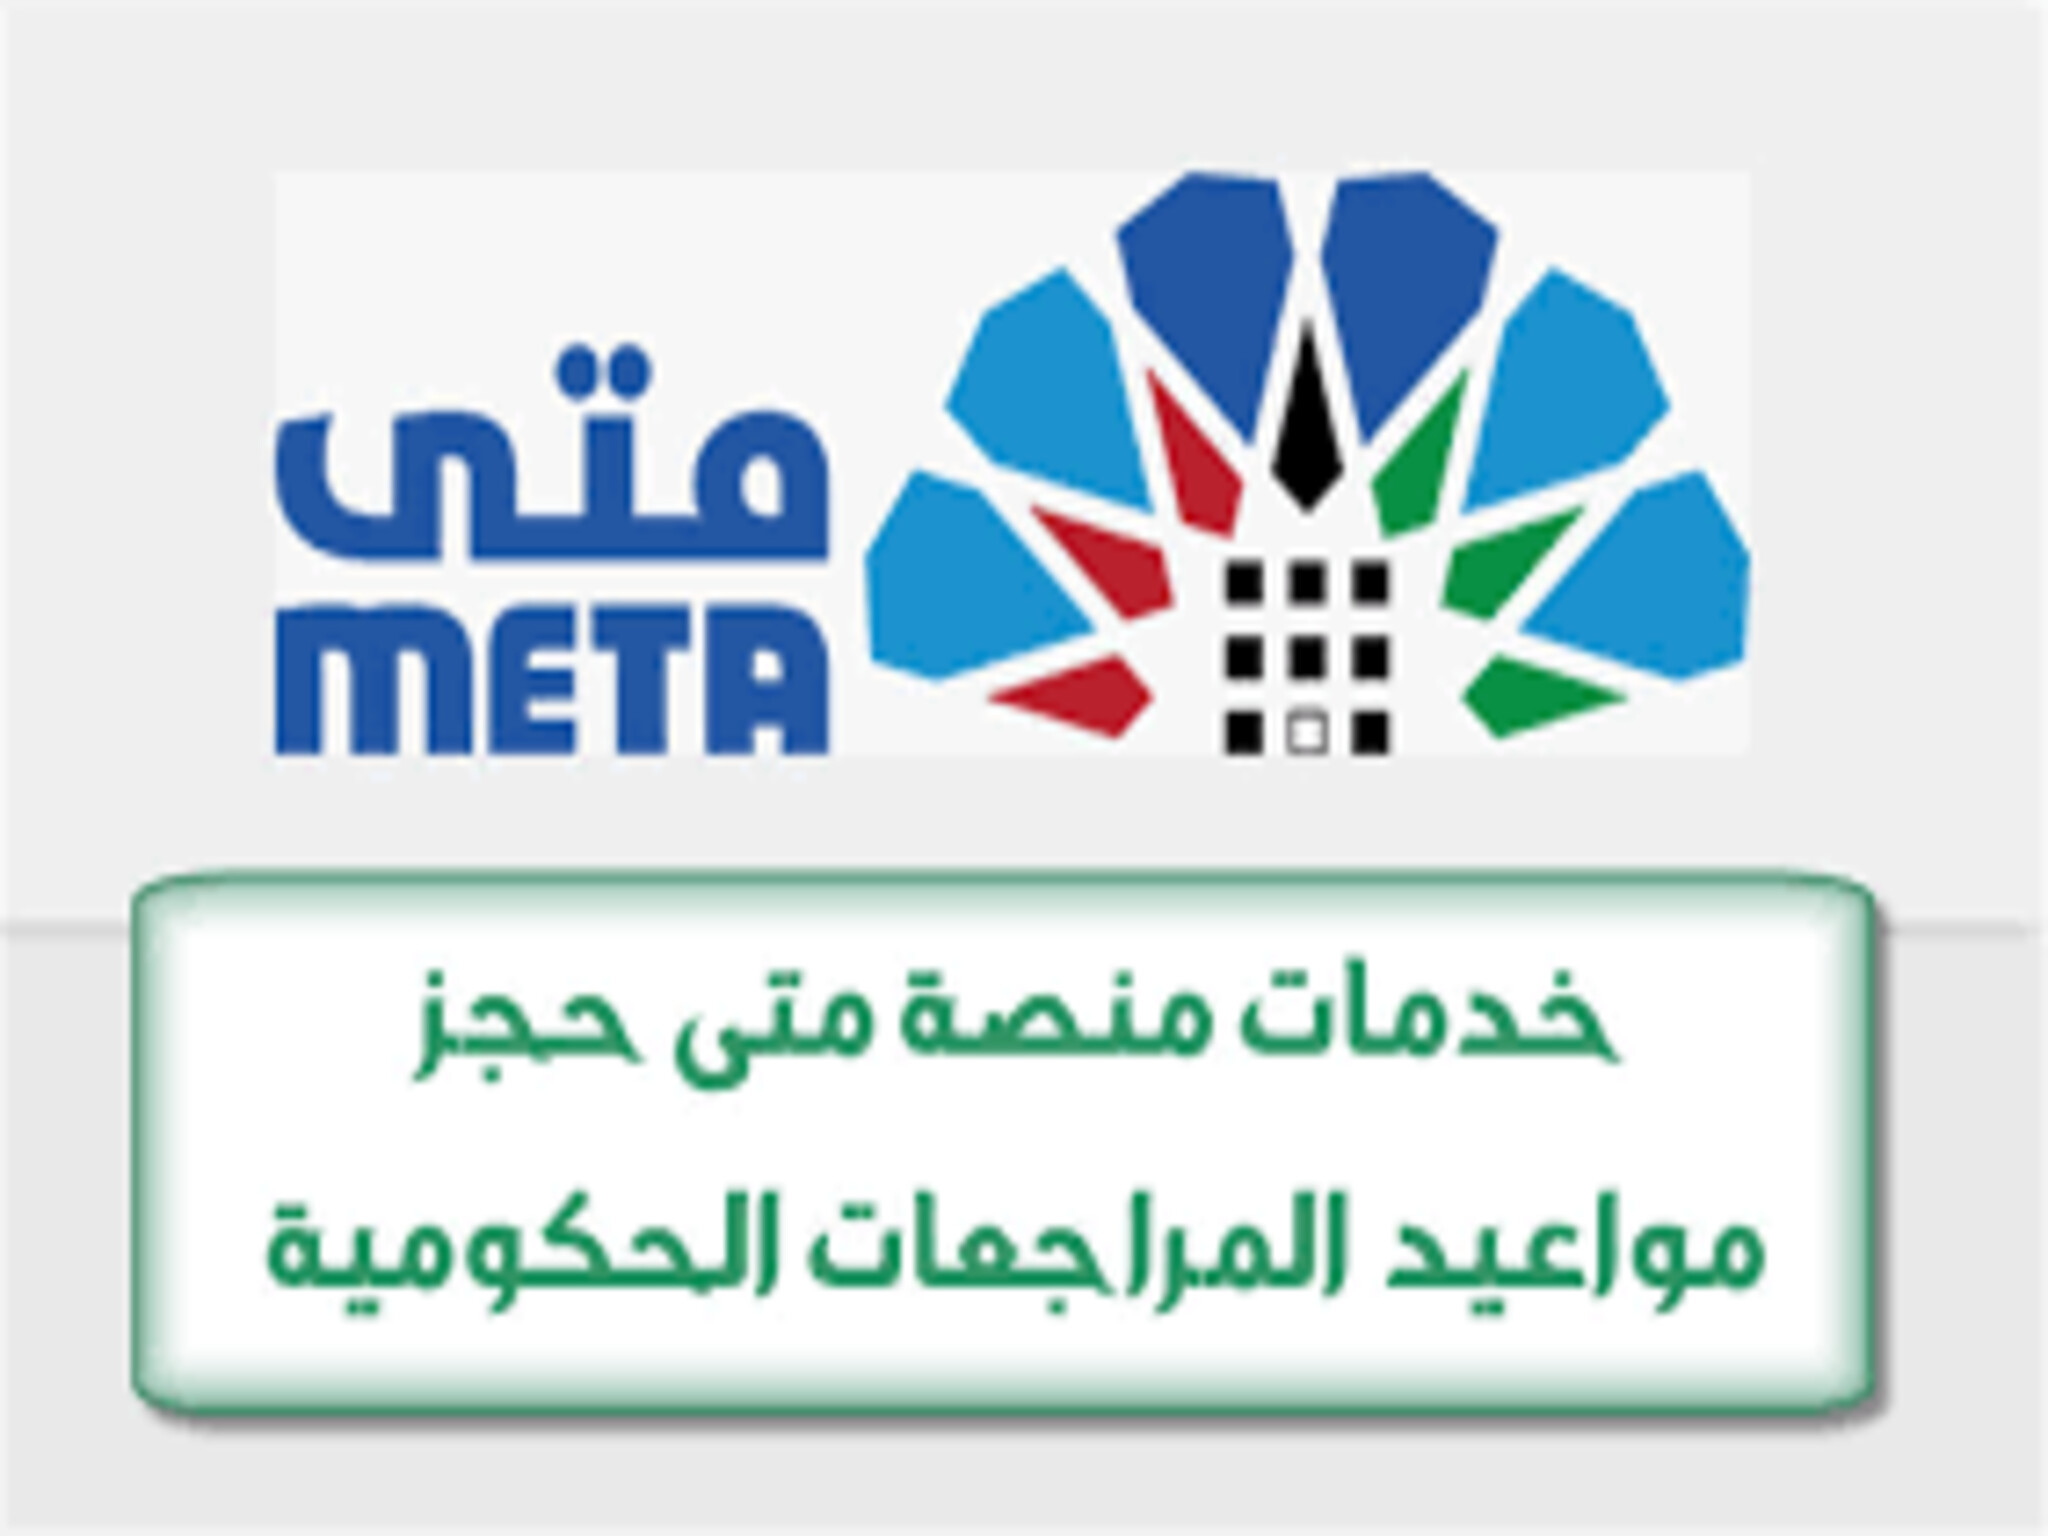 خطوات إنشاء حساب في منصة "متي الكويتية" وحجز موعد بالمصالح الحكومية